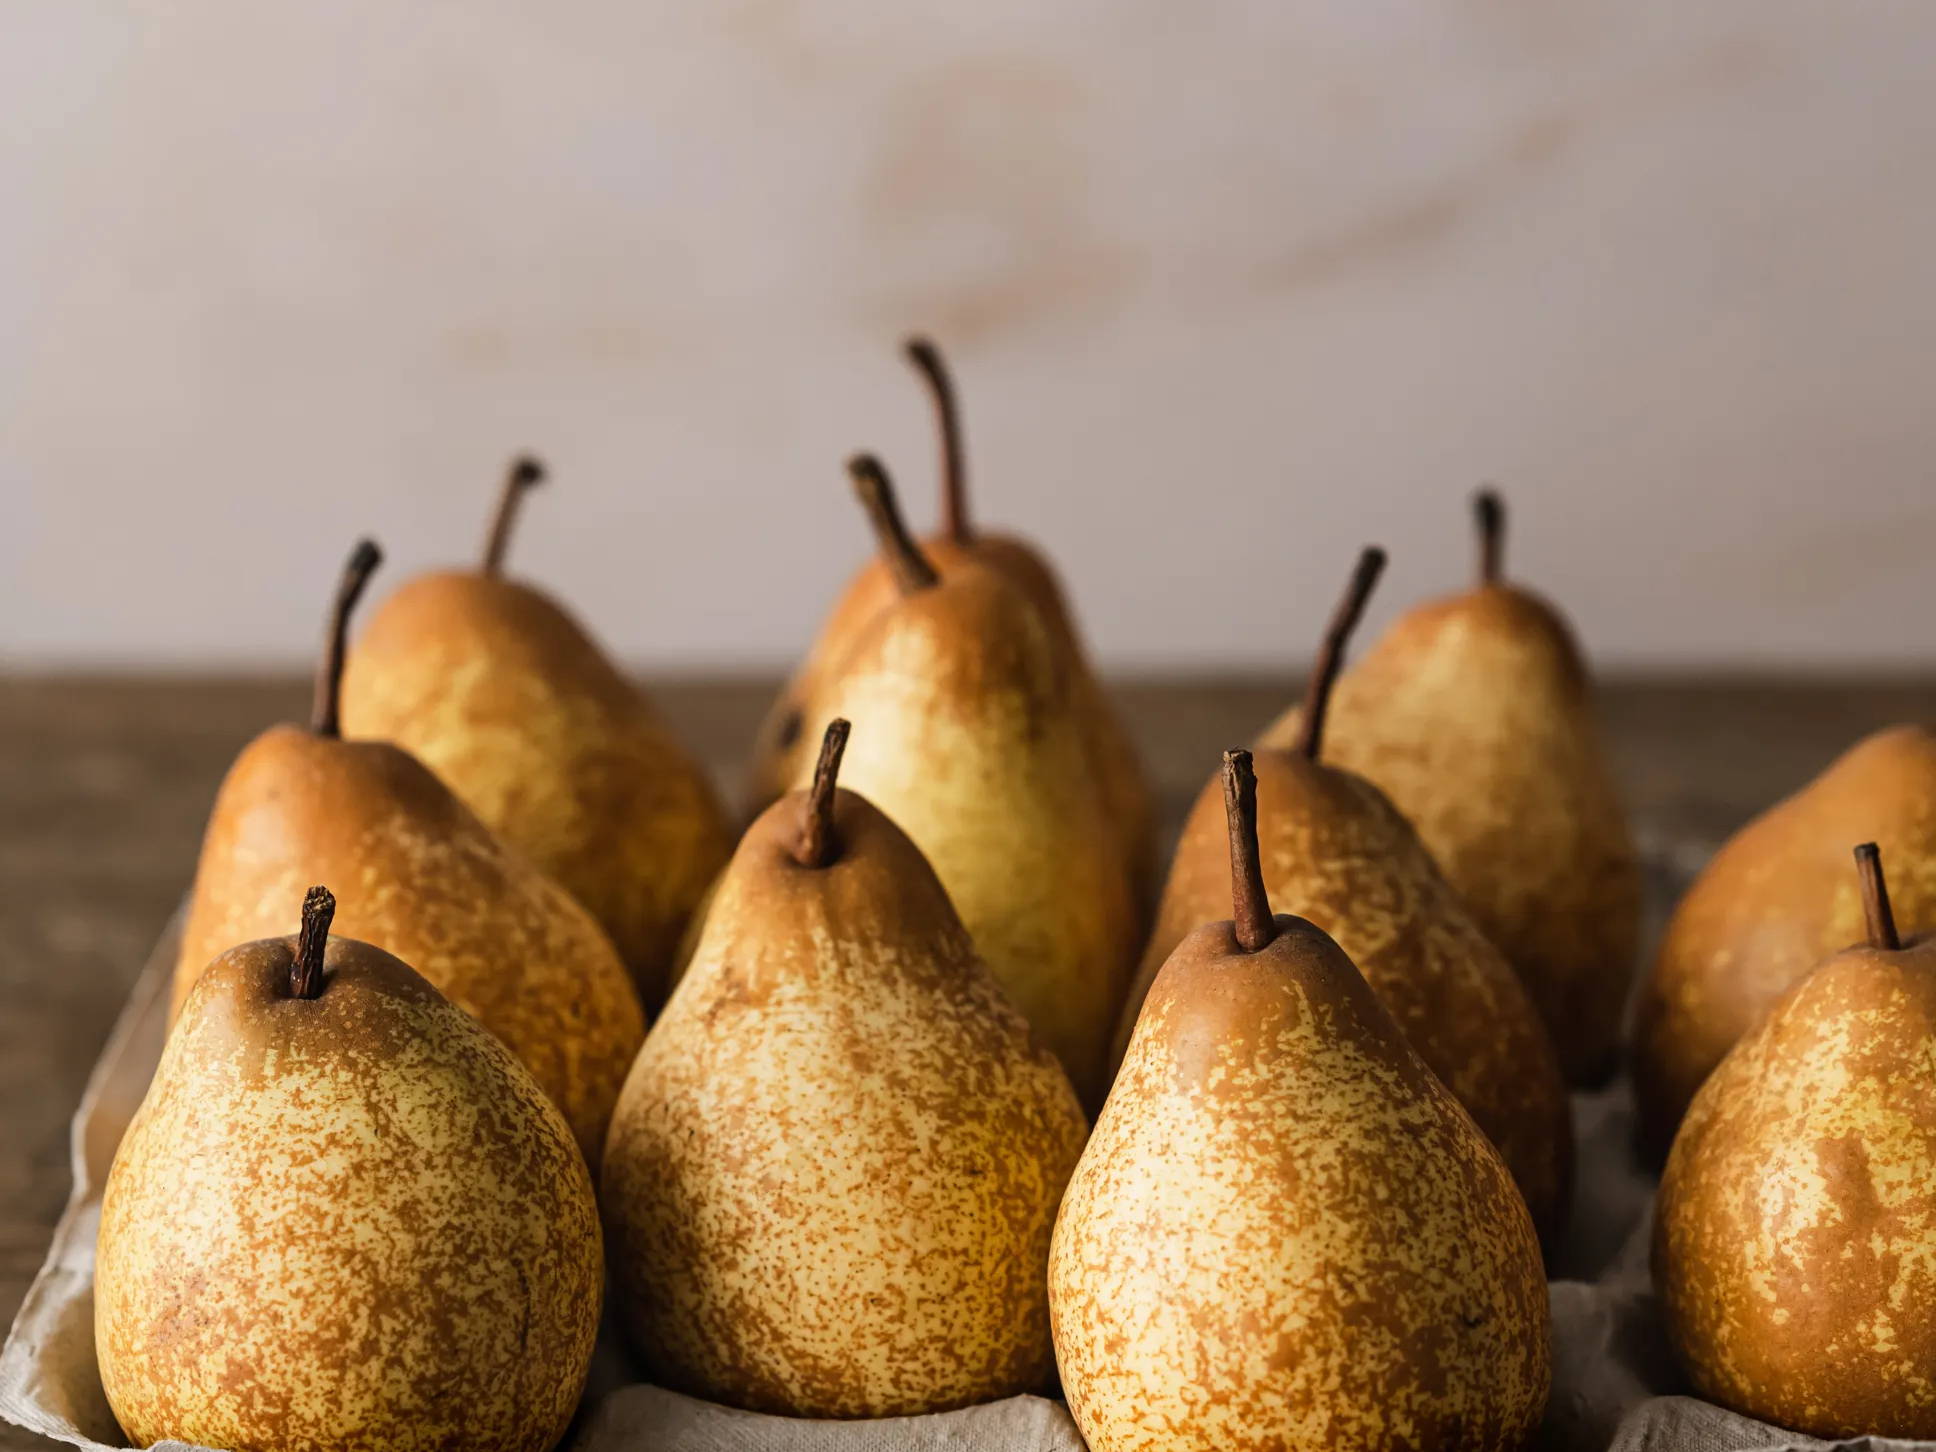 A carton of golden pears